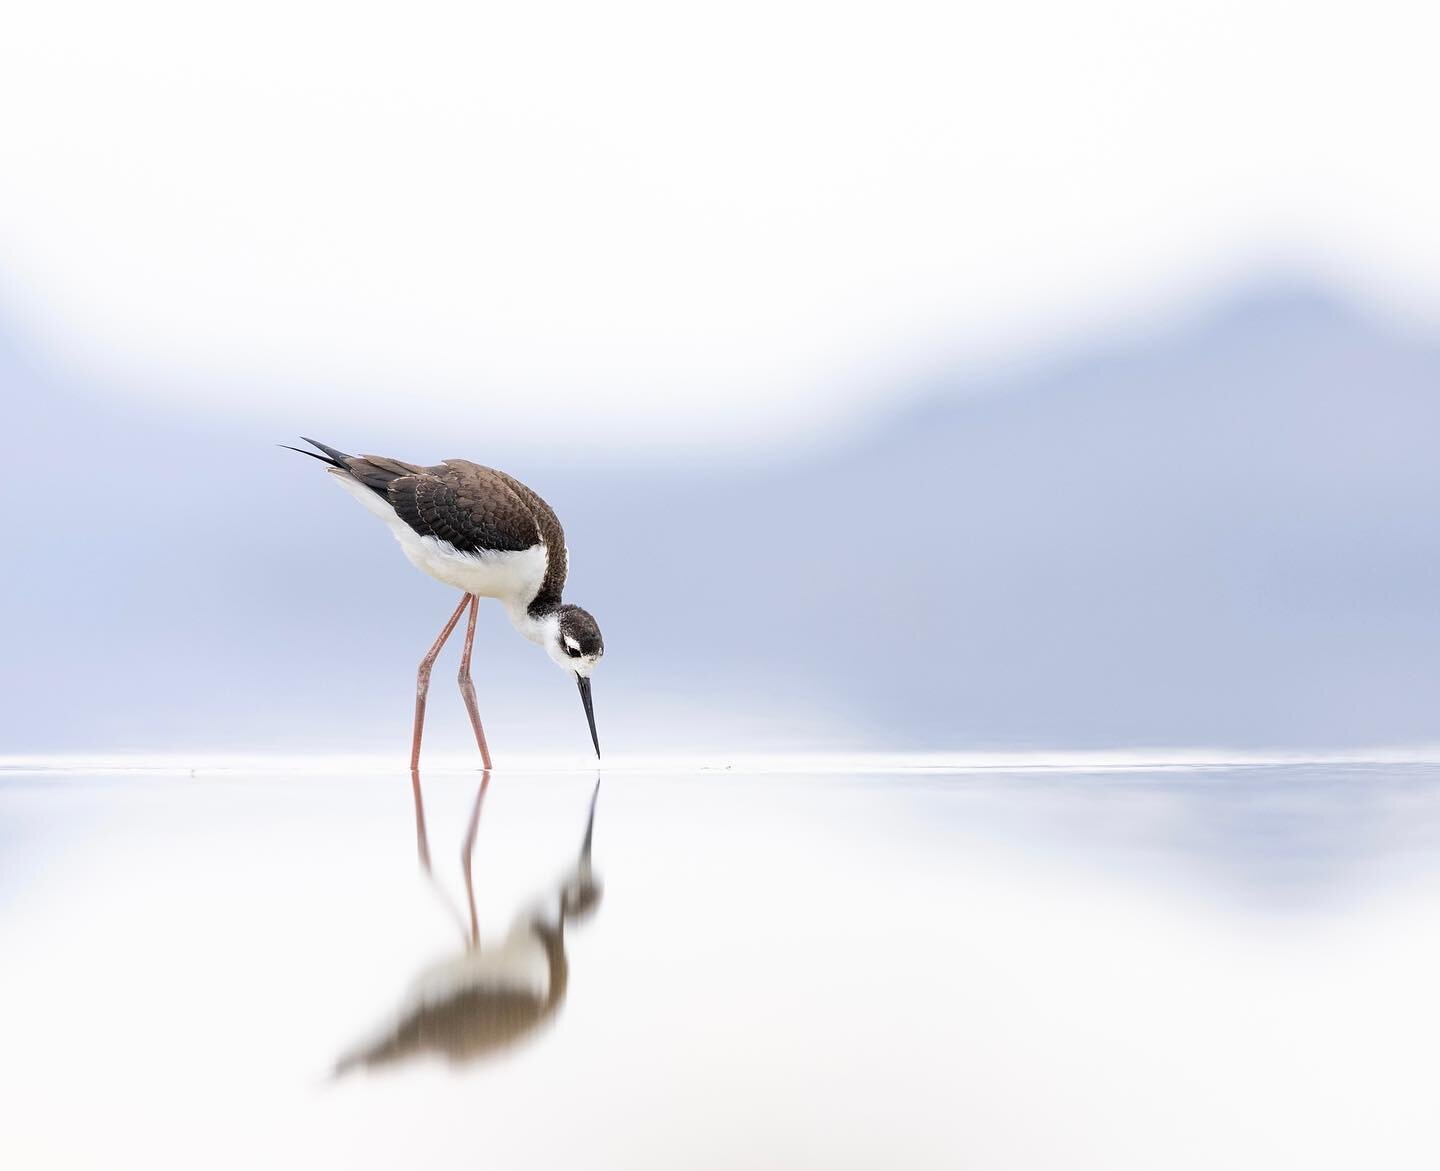 Little bebe long legs. 

#blackneckedstilt #greatsaltlake #shorebirds #birdsofgreatsaltlake